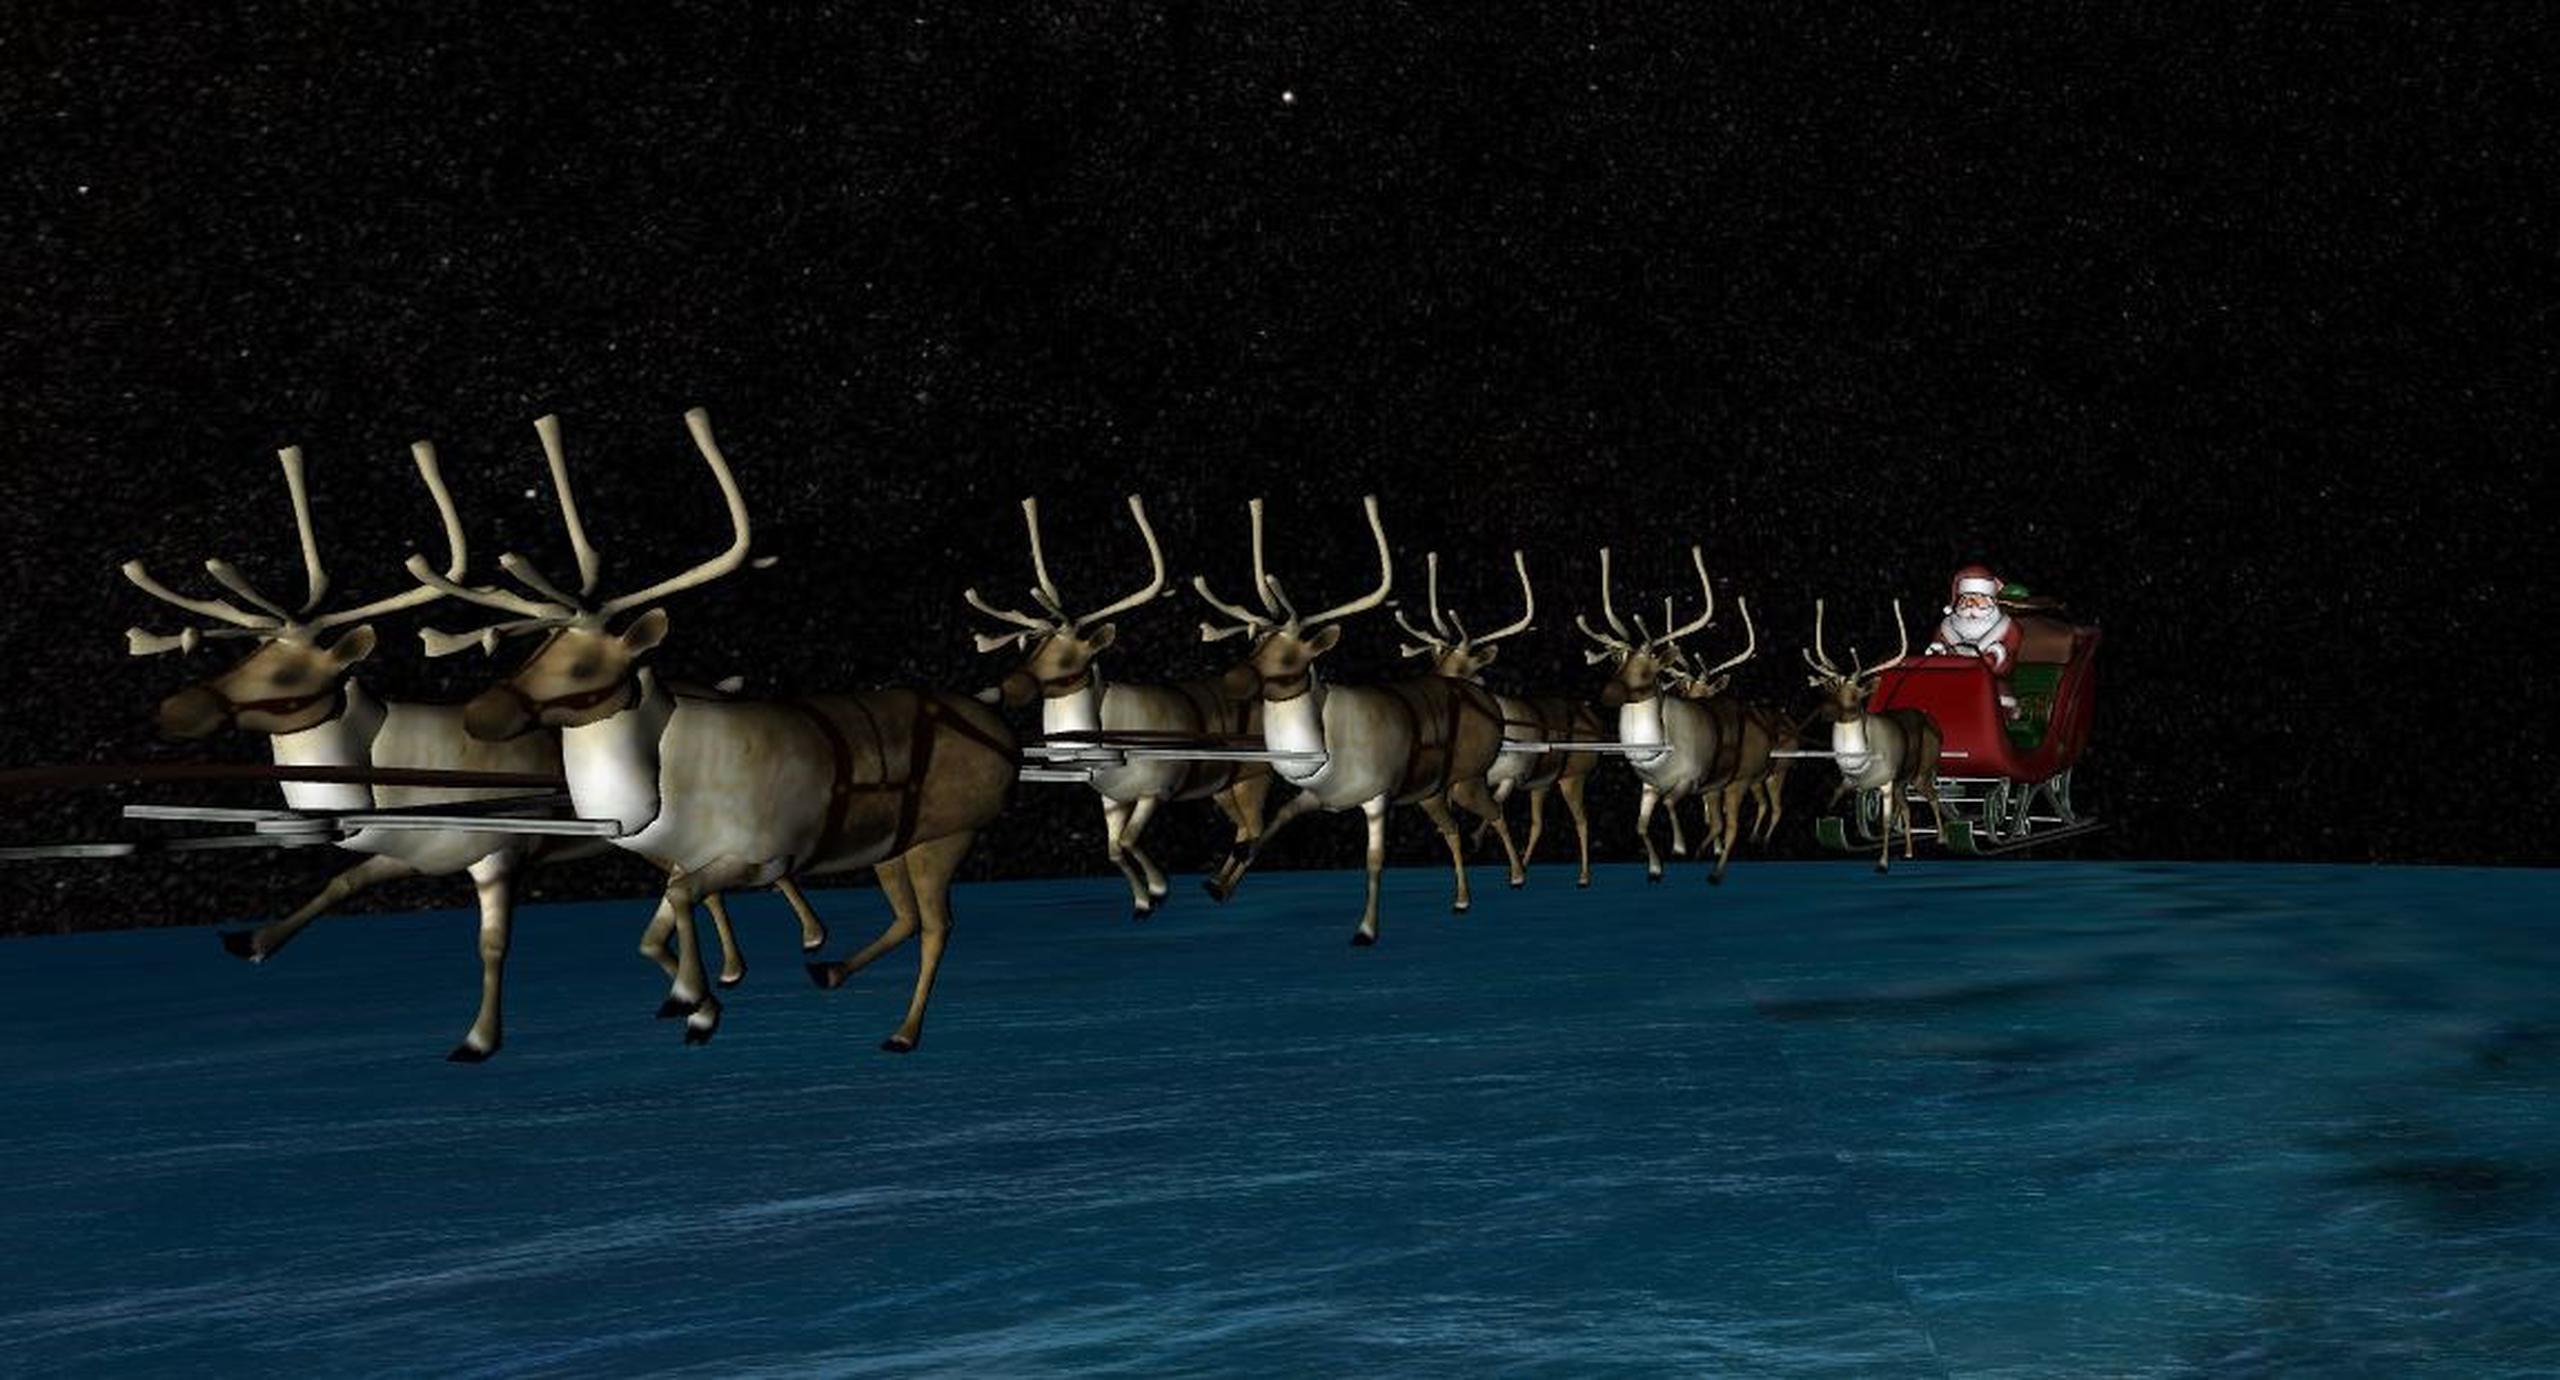 Guiado por sus renos, en especial el de la brillante nariz roja, Rudolph, Santa Claus recorrerá hoy todo el mundo. (Fotocaptura)